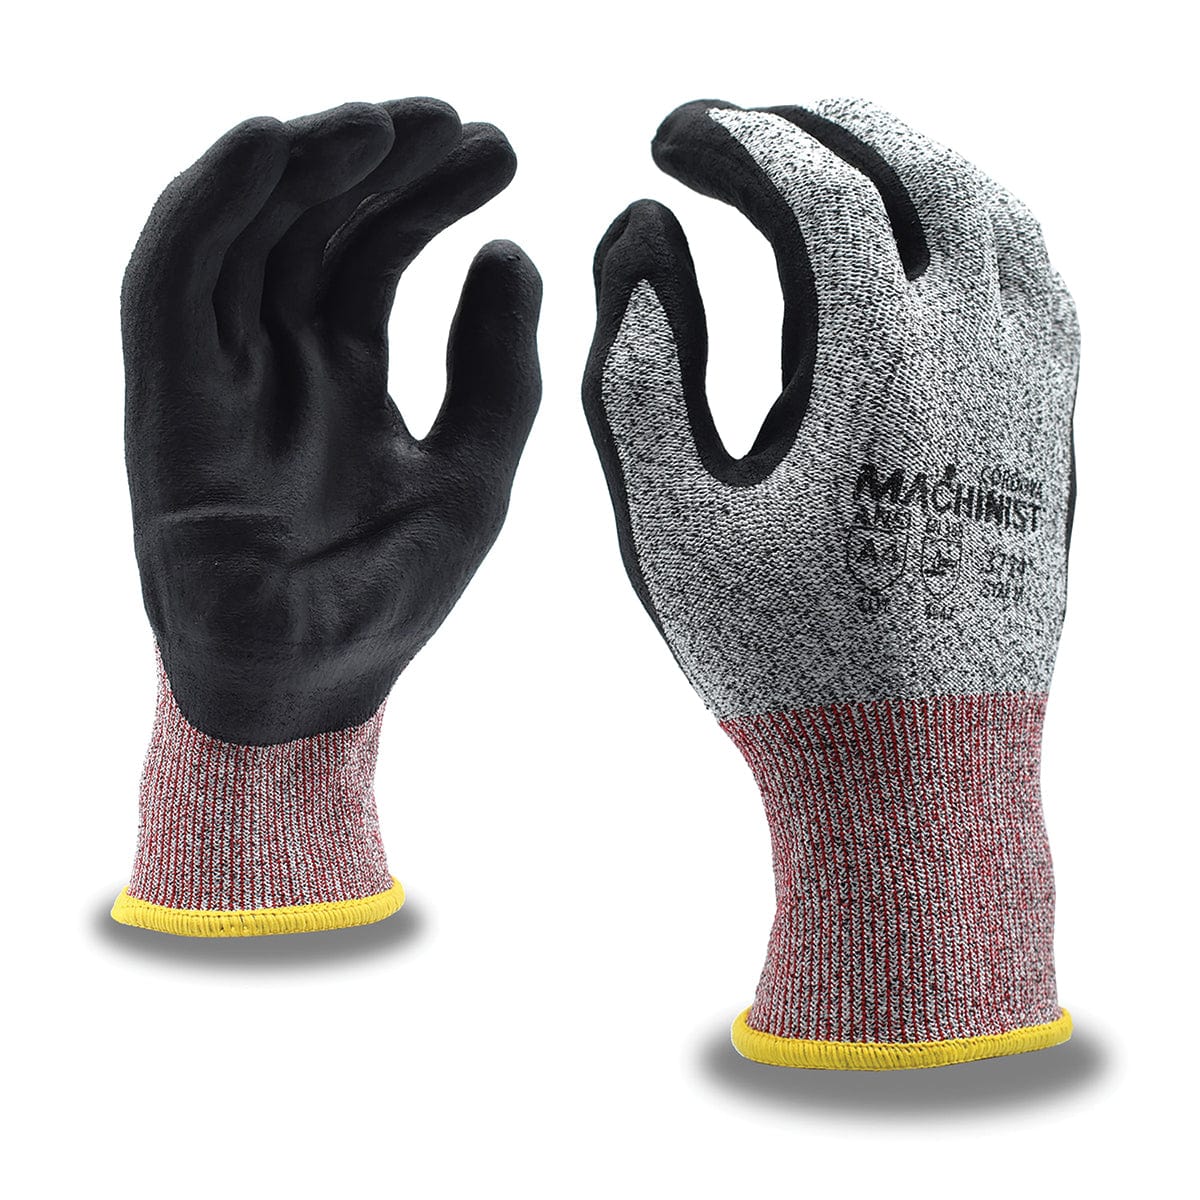 Cordova MACHINIST Cut Level A4 Black Foam Nitrile Coated Gloves